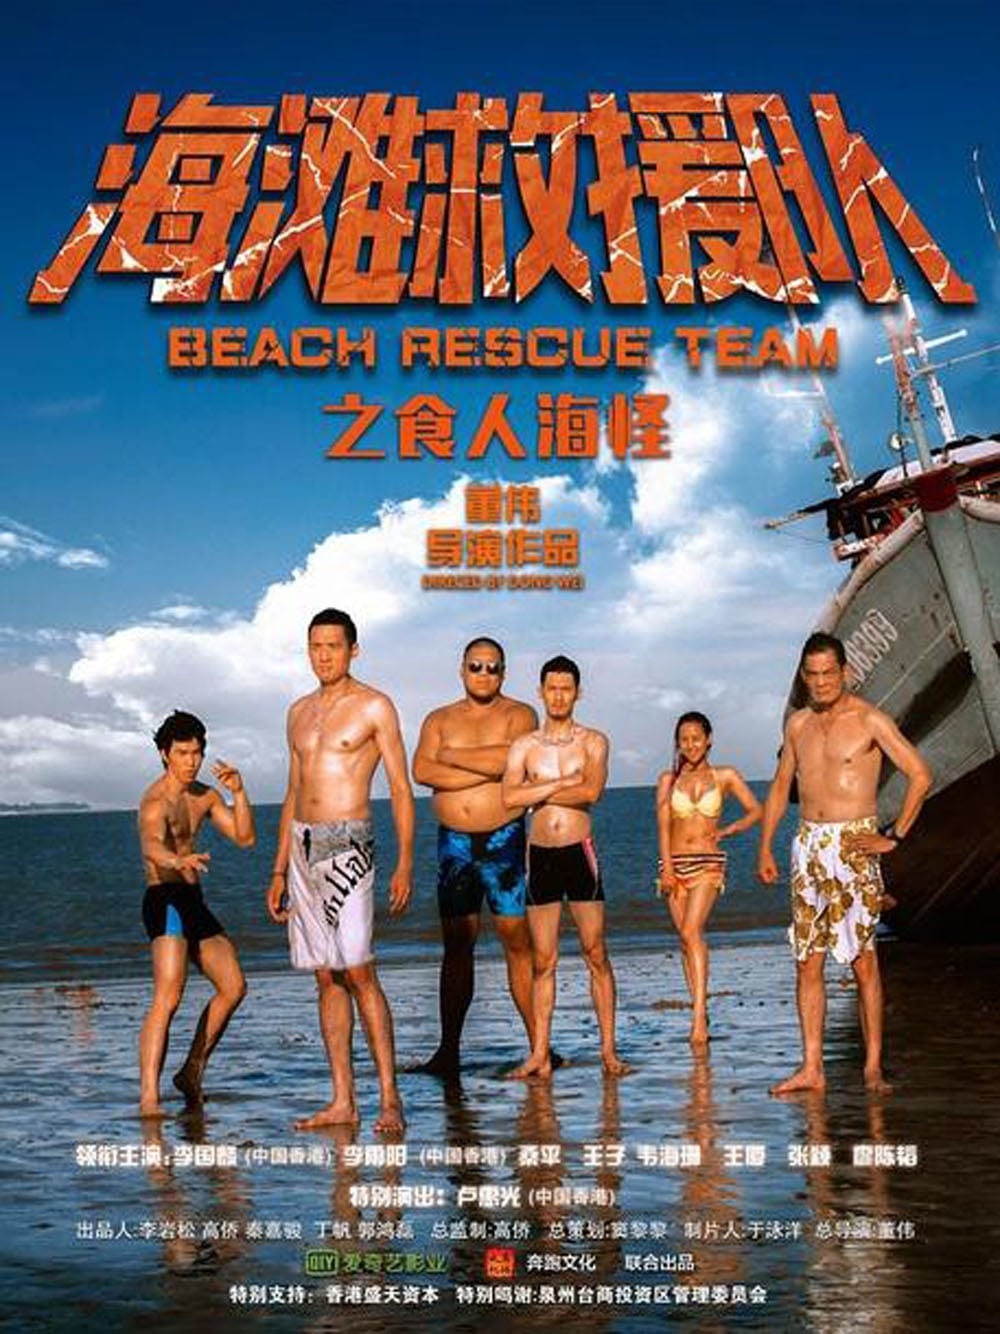 Beach Rescue Team